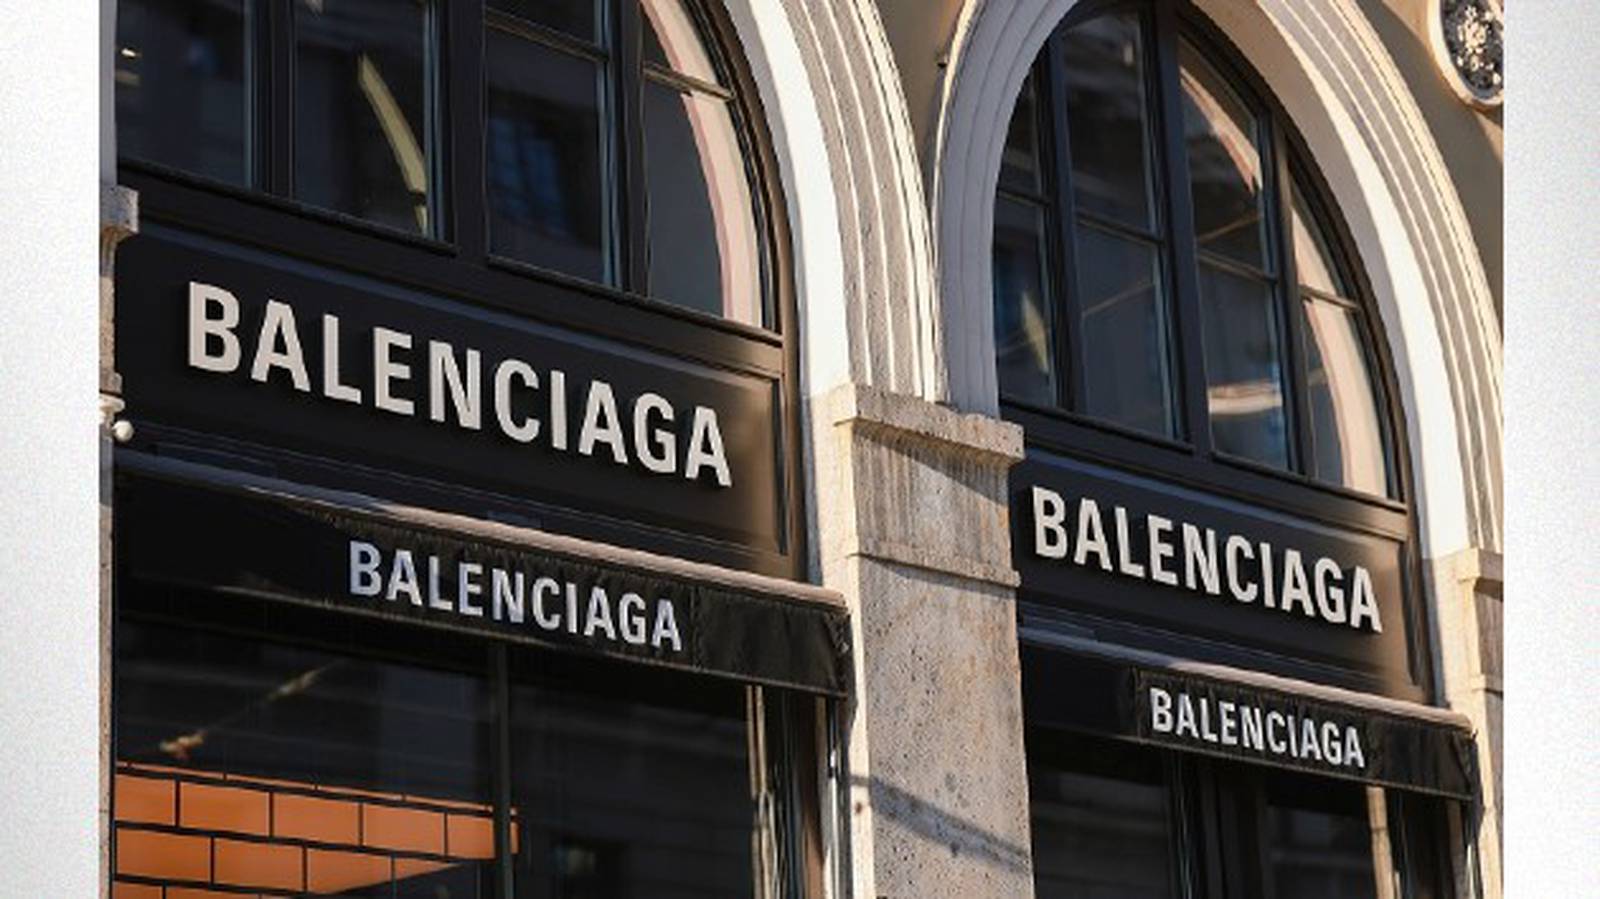 Balenciaga's Denma Gvasalia issues apology for 